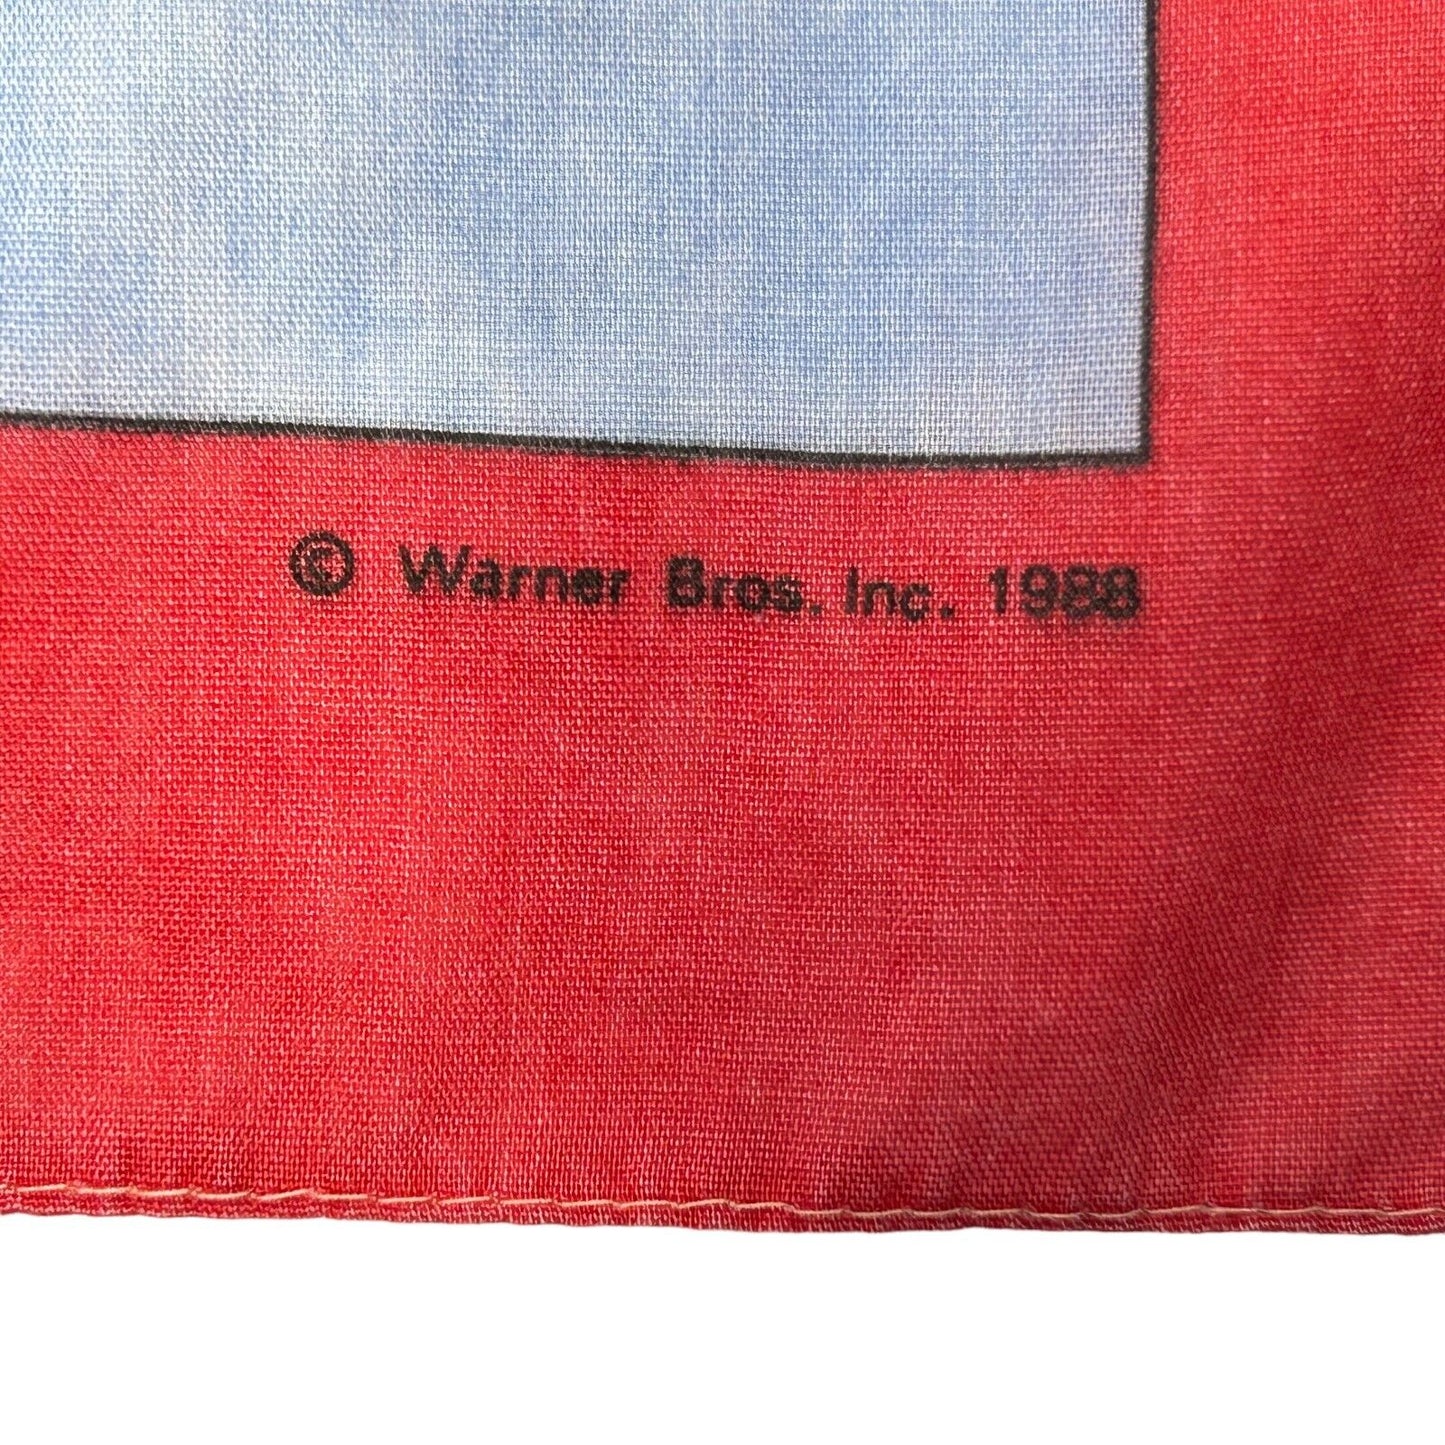 Tweety Bird Looney Tunes Bandana Handkerchief Vintage 80s Warner Bros USA Made